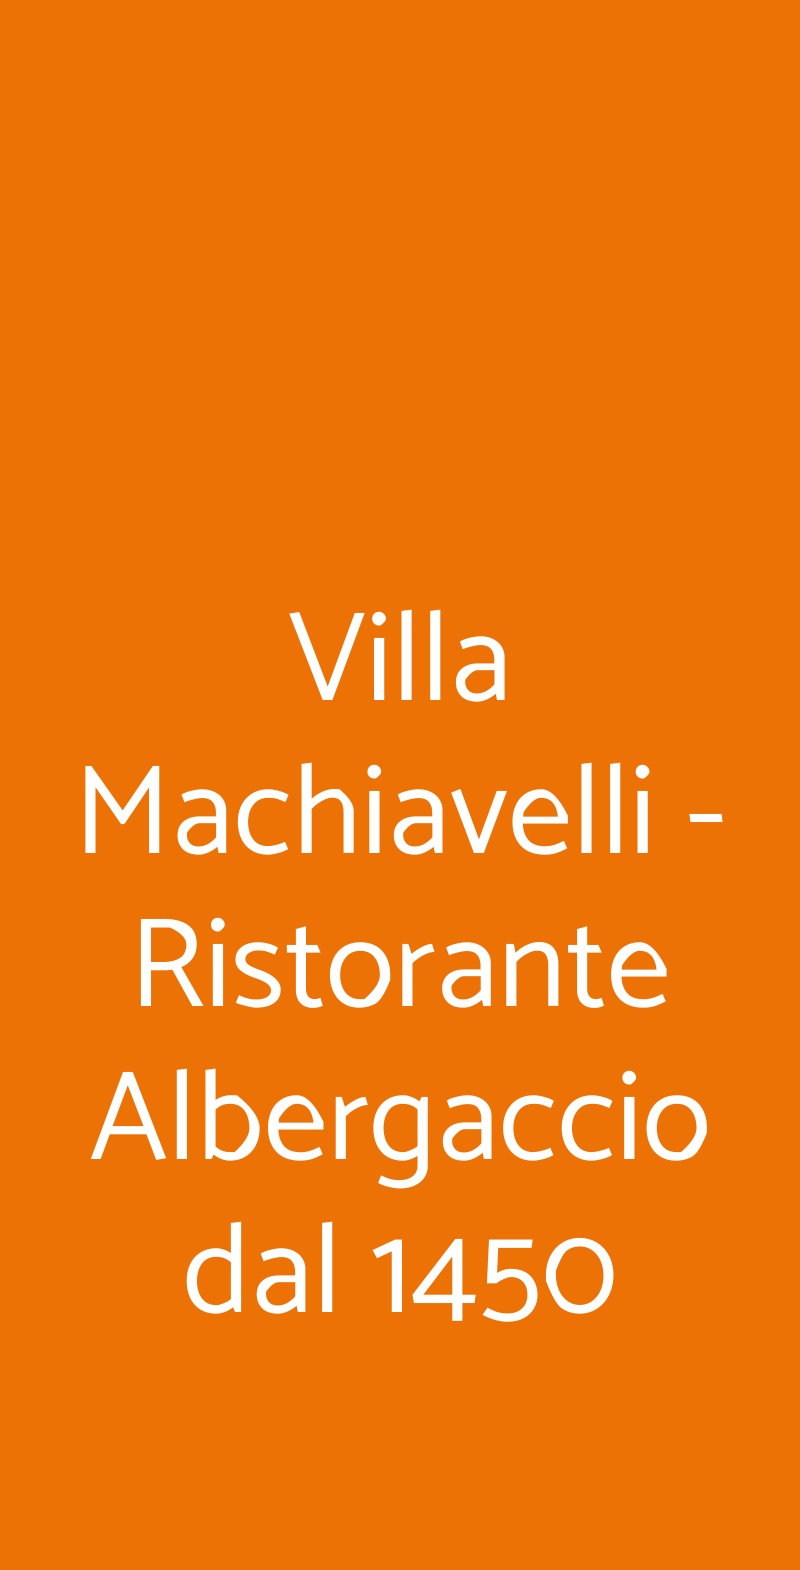 Villa Machiavelli - Ristorante Albergaccio dal 1450 San Casciano in Val di Pesa menù 1 pagina